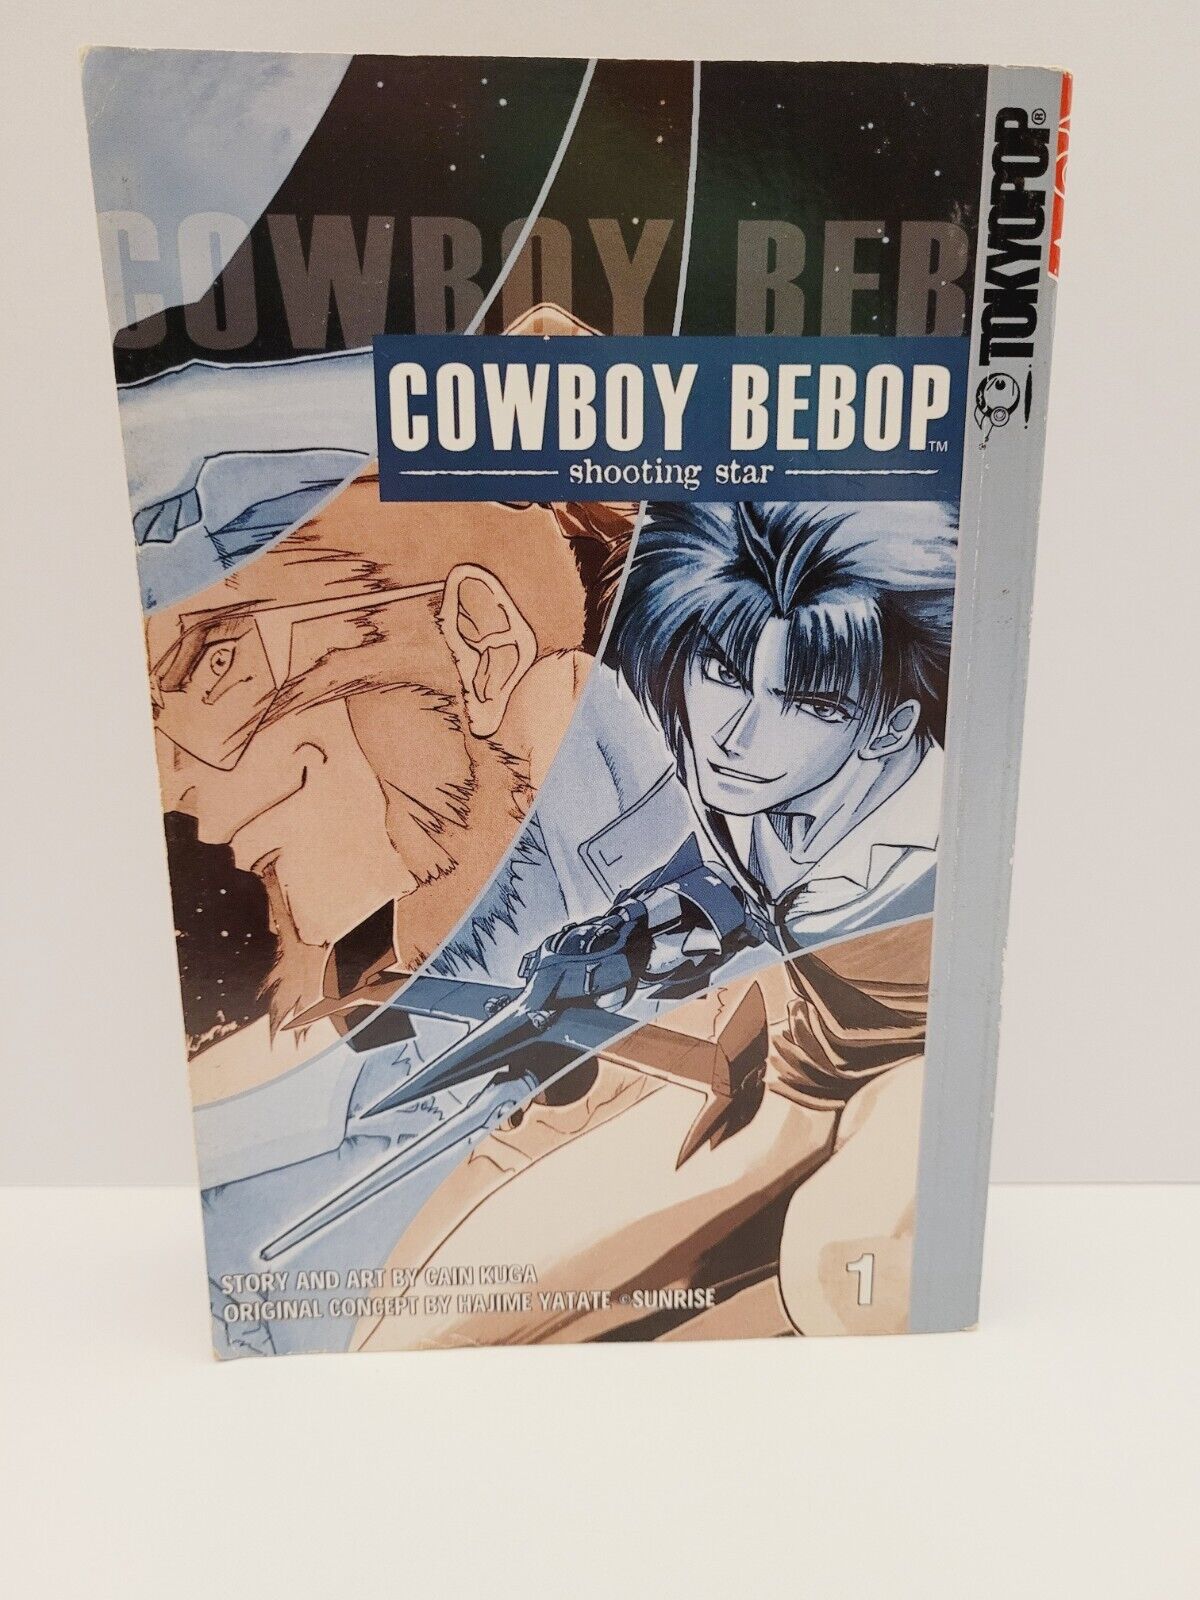 Cowboy Bebop Shooting Star Vol. 1 by Cain Kuga (2003) Rare Manga graphic novel